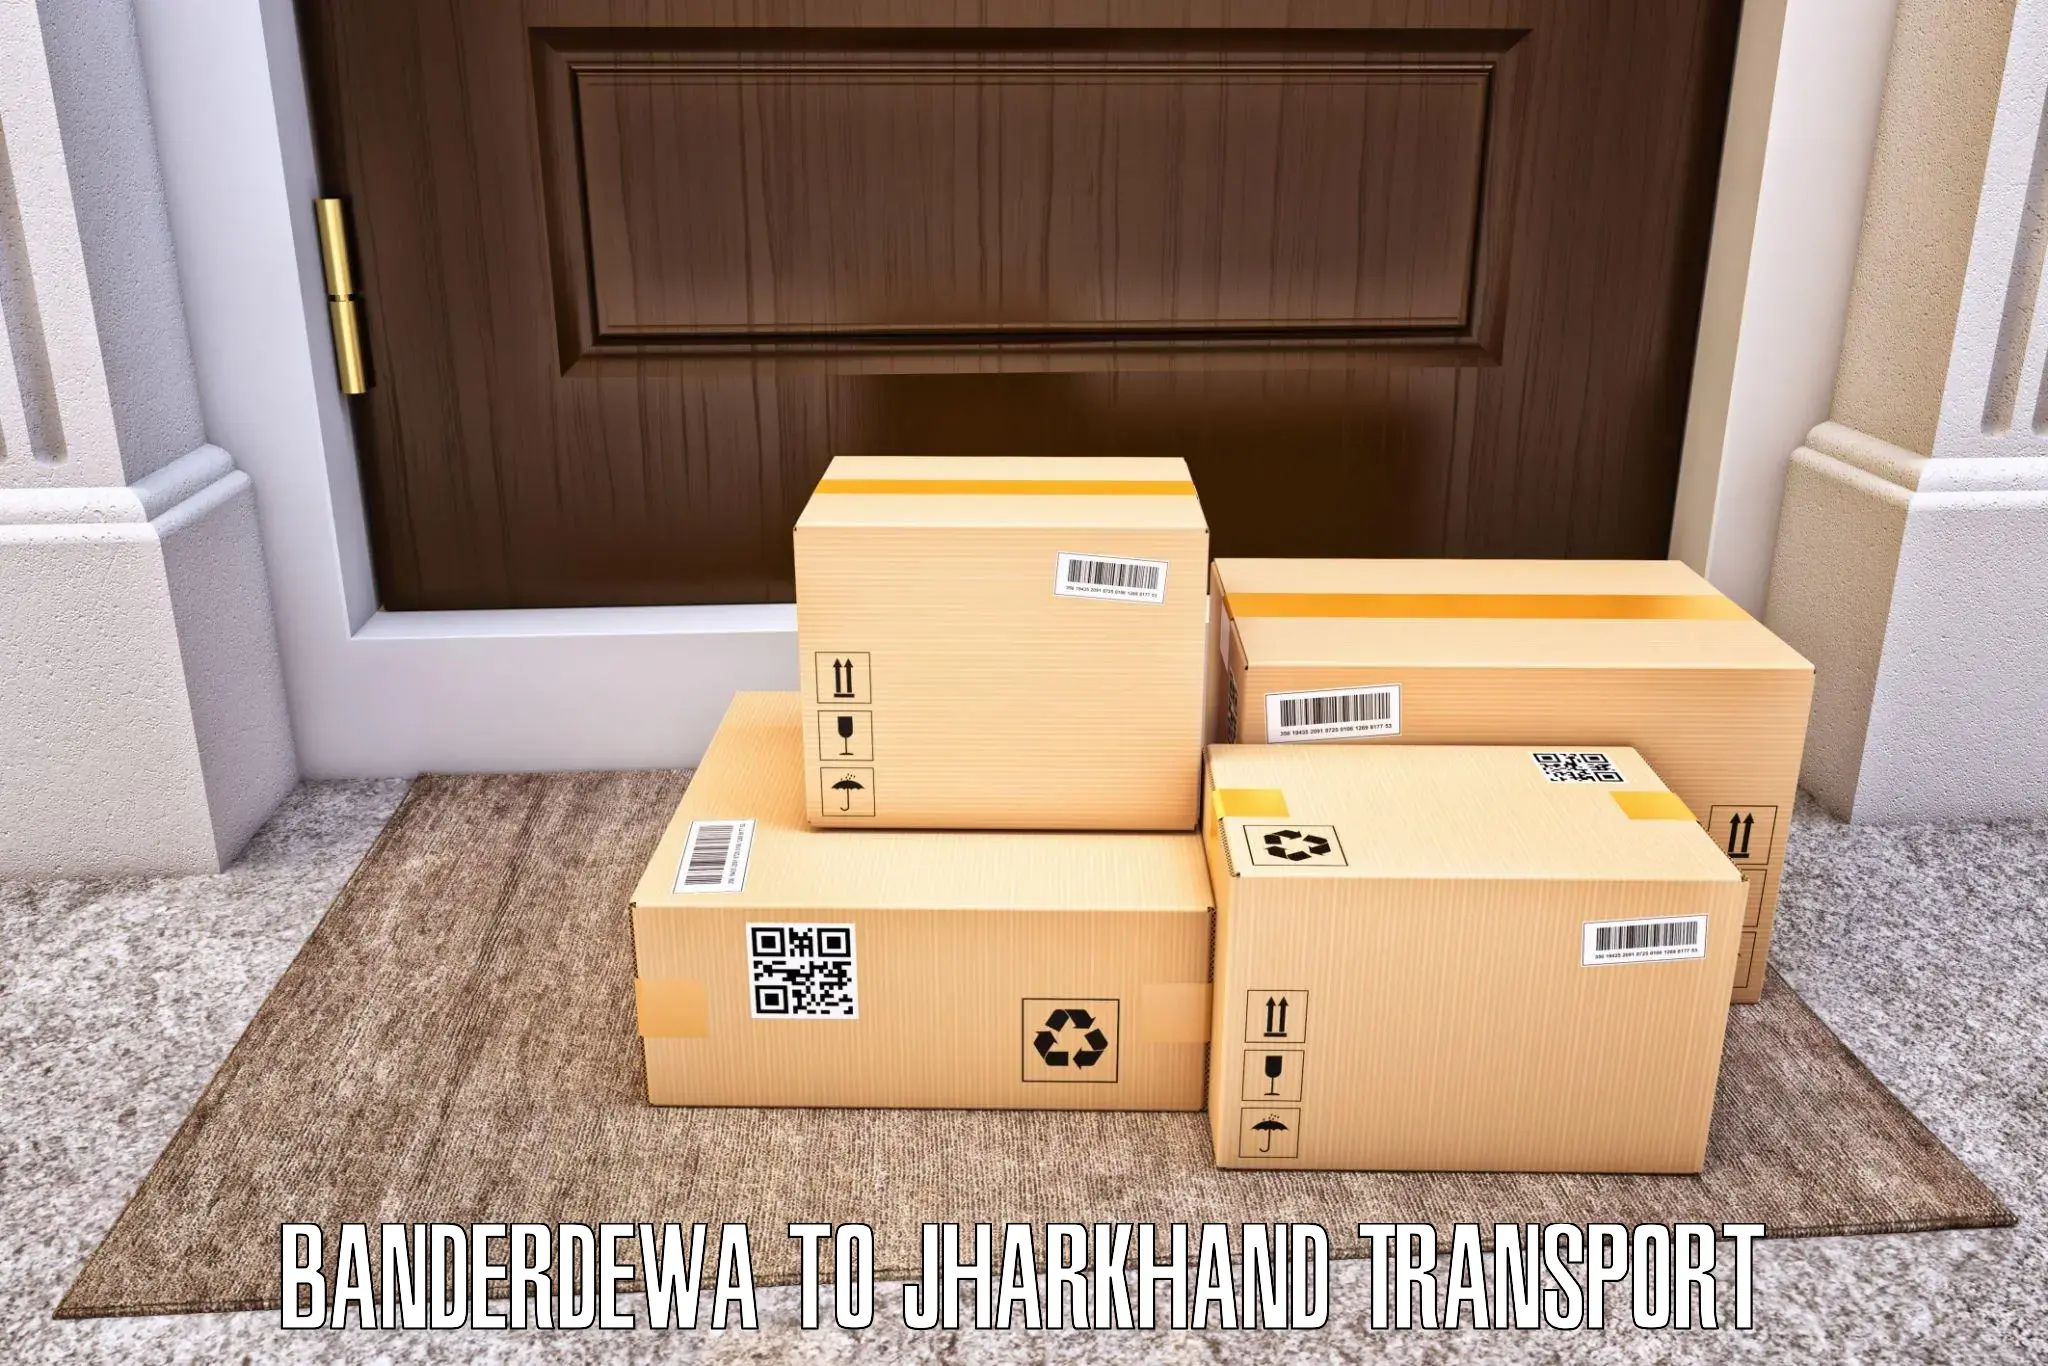 Vehicle parcel service Banderdewa to Peterbar